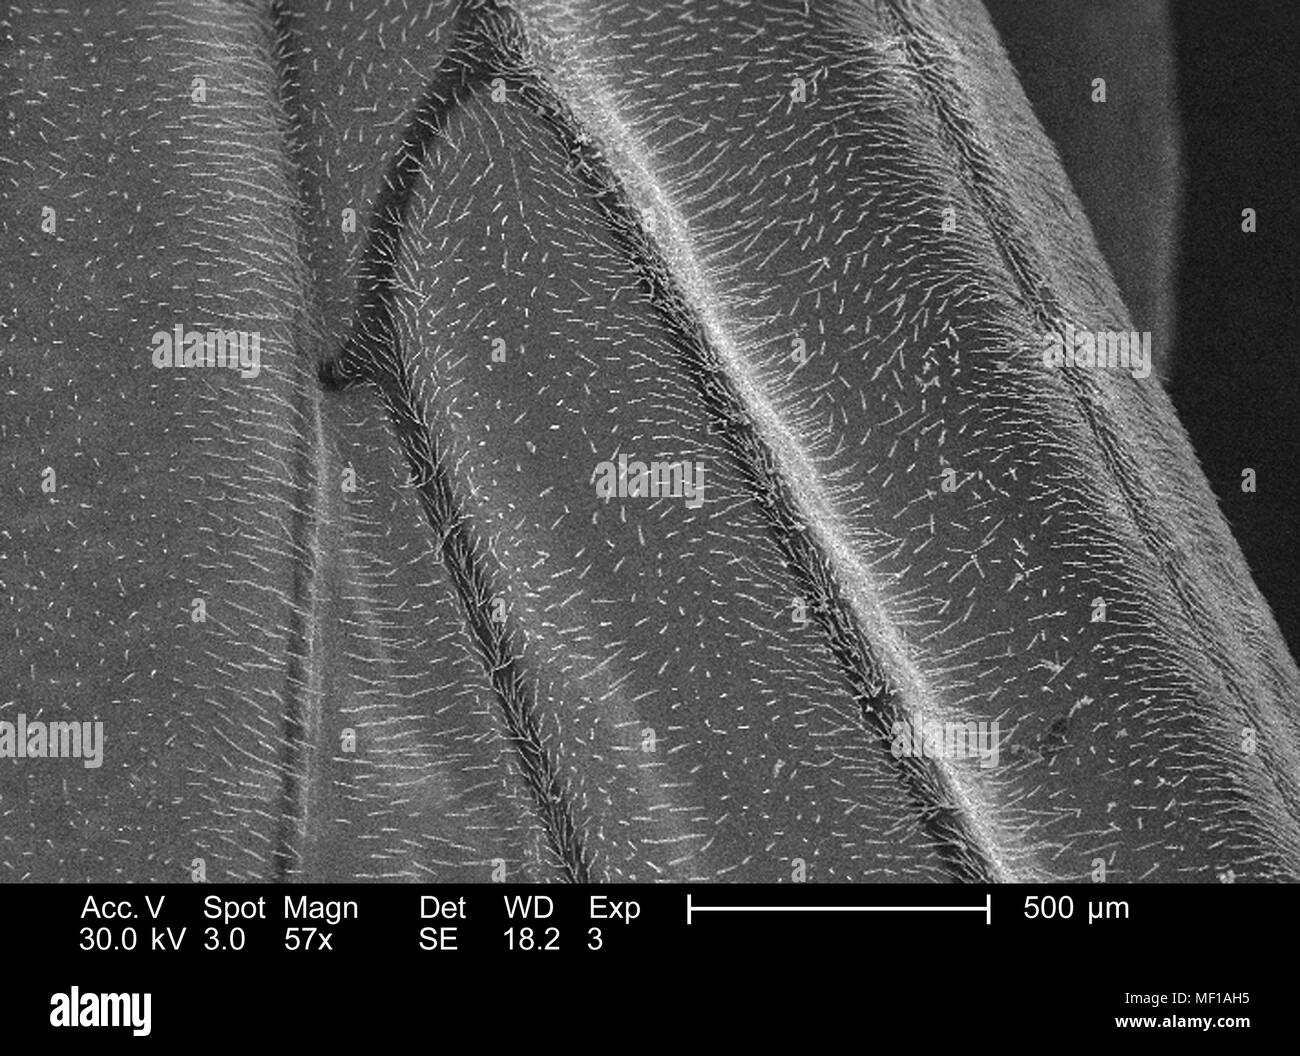 Unidentified wasp anta rivestita con peli sensoriali (Setae), raffigurata in 57x di scansione ingrandita al microscopio elettronico (SEM) immagine, 2005. Immagine cortesia di centri per il controllo delle malattie (CDC) / Janice Haney Carr. () Foto Stock